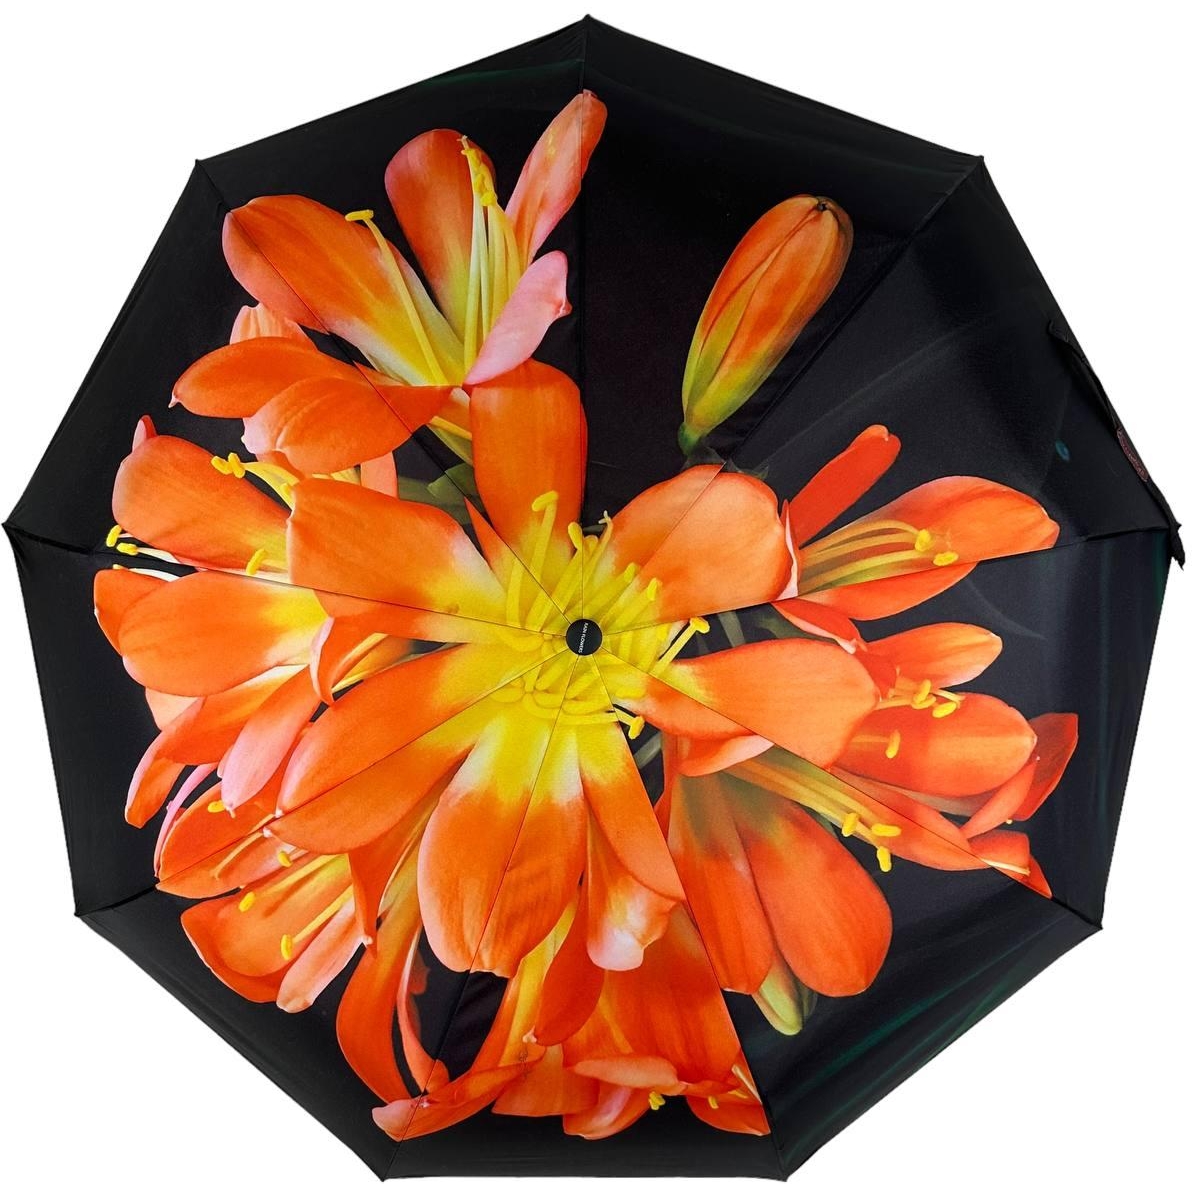 Женский складной зонтик полный автомат Rain 98 см черный - фото 1